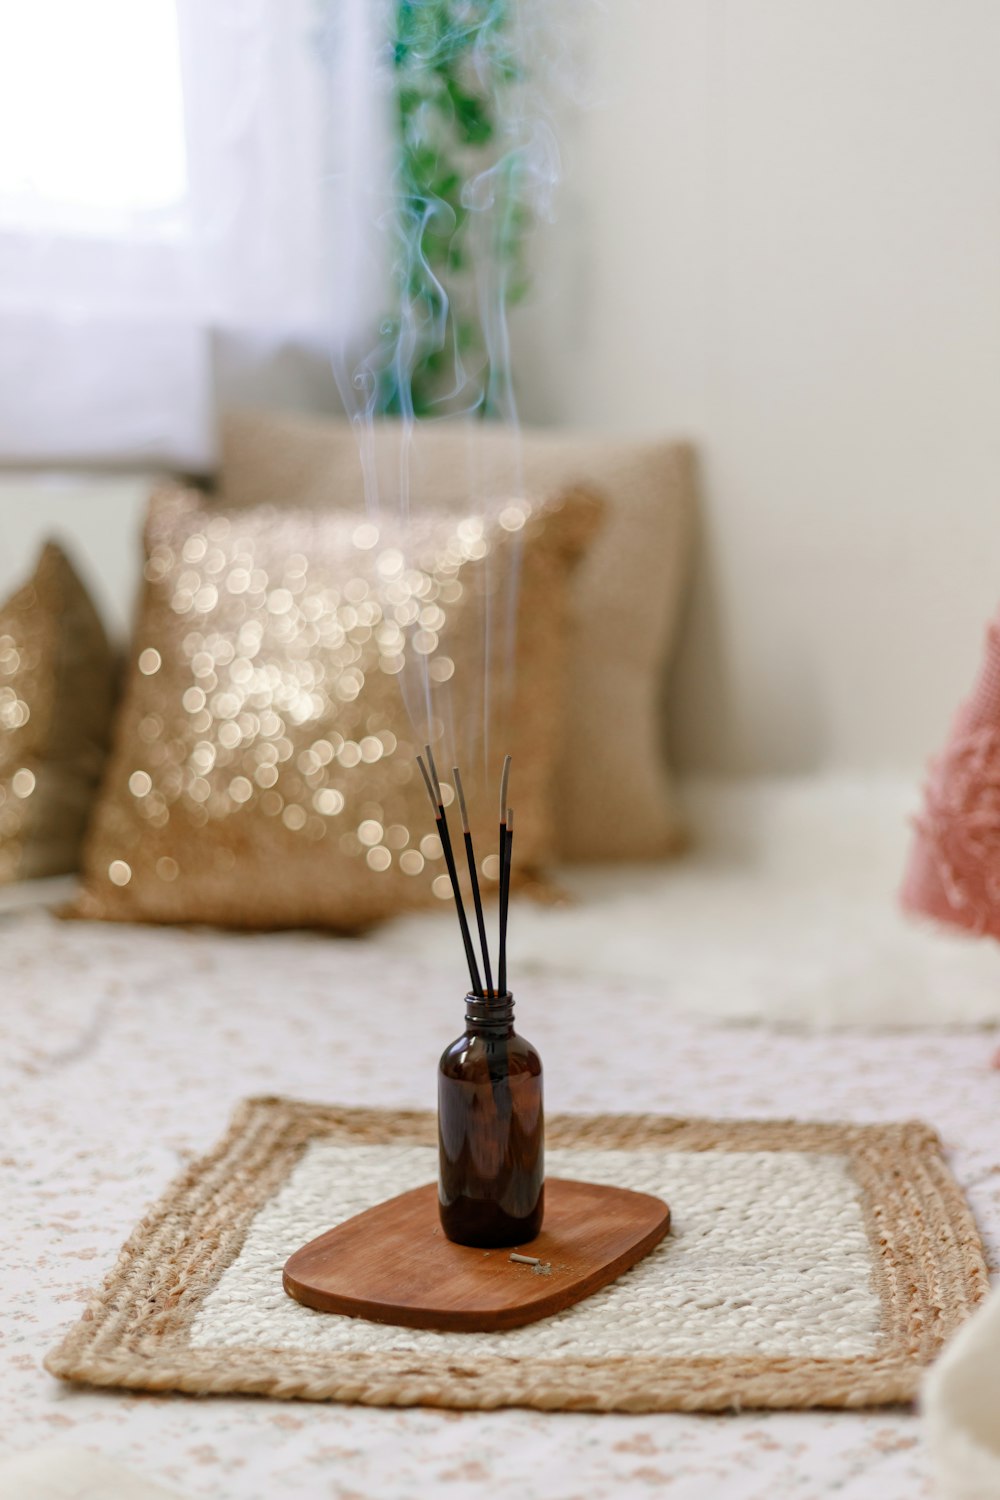 茶色の木製のテーブルに茶色のガラス瓶